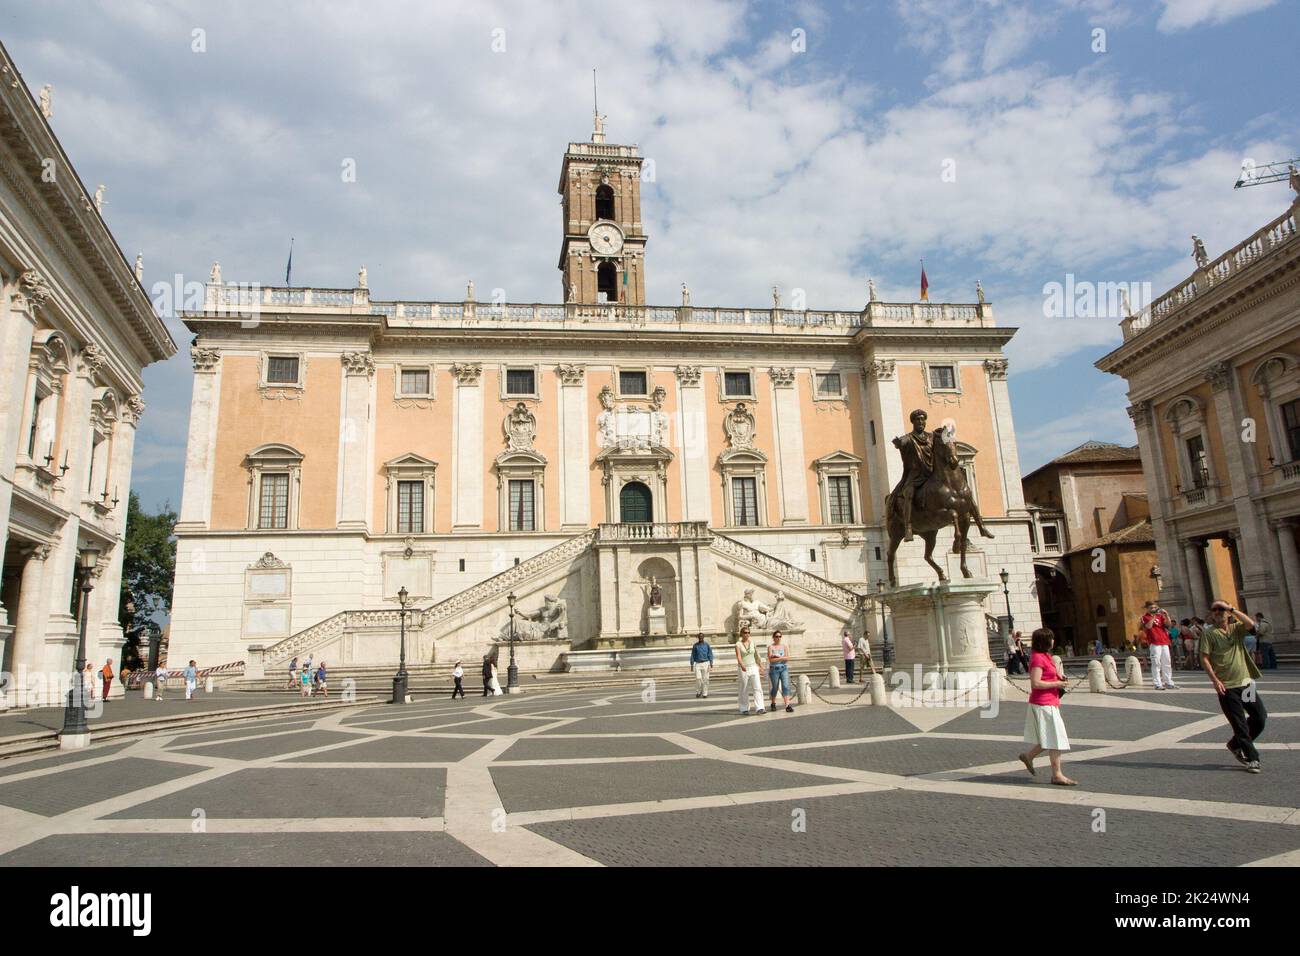 Kapitol, von Michelangelo entworfener Platz, mit Präsidentenpalast, Latium, Italien, Rom Stock Photo